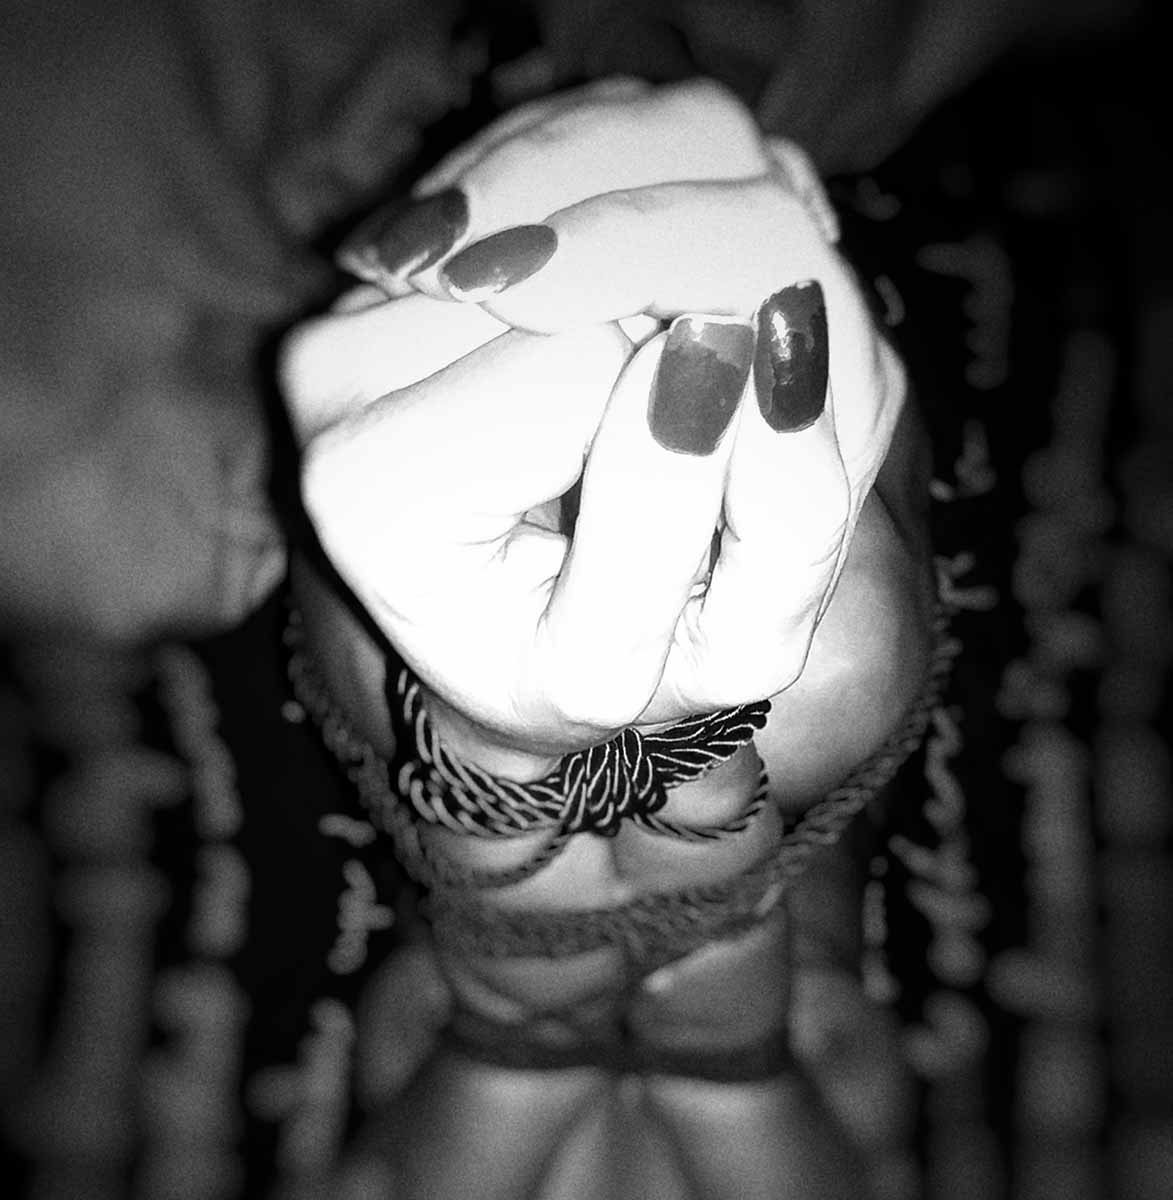 ידיים כפותות בסשן BDSMי מצולם (צילום: ערן גילווארג)